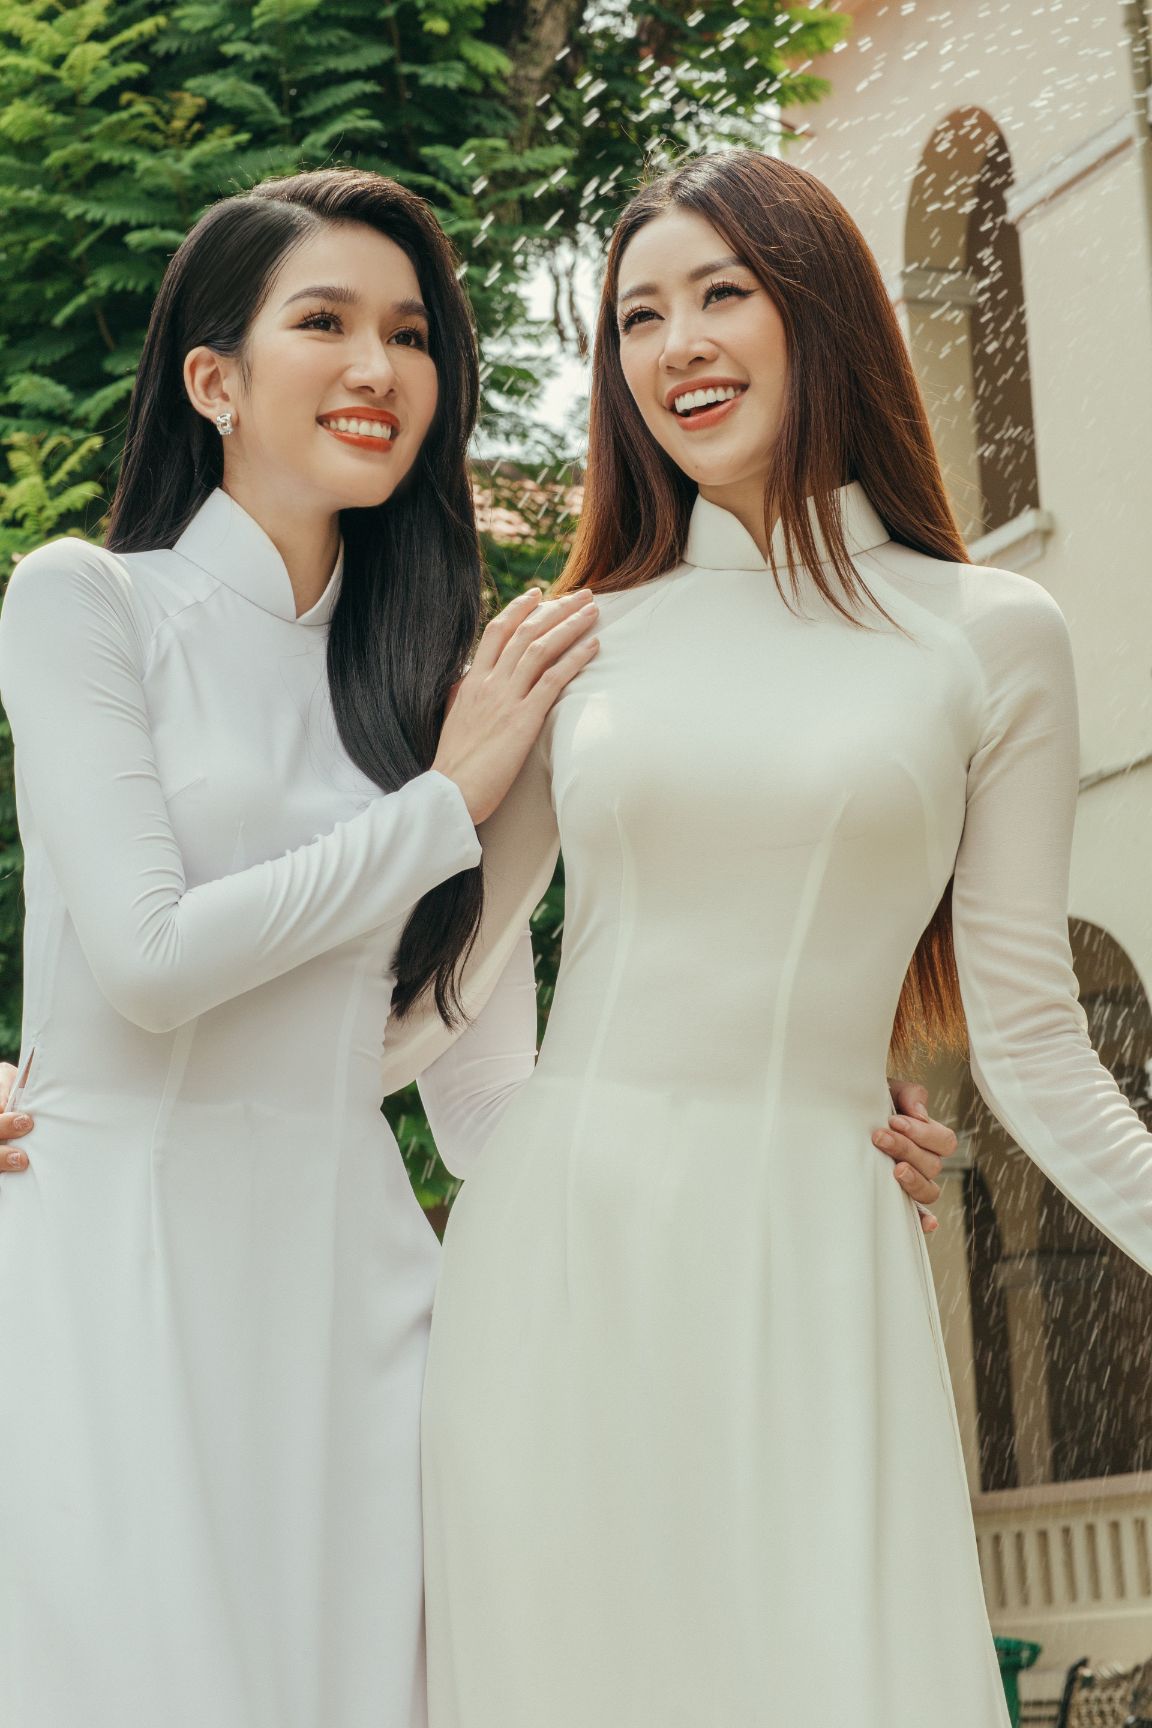 Hoa hau Khanh Van va A hau Phuong Anh 012 Hoa hậu Khánh Vân và Á hậu Phương Anh thướt tha áo dài chào mừng năm học mới